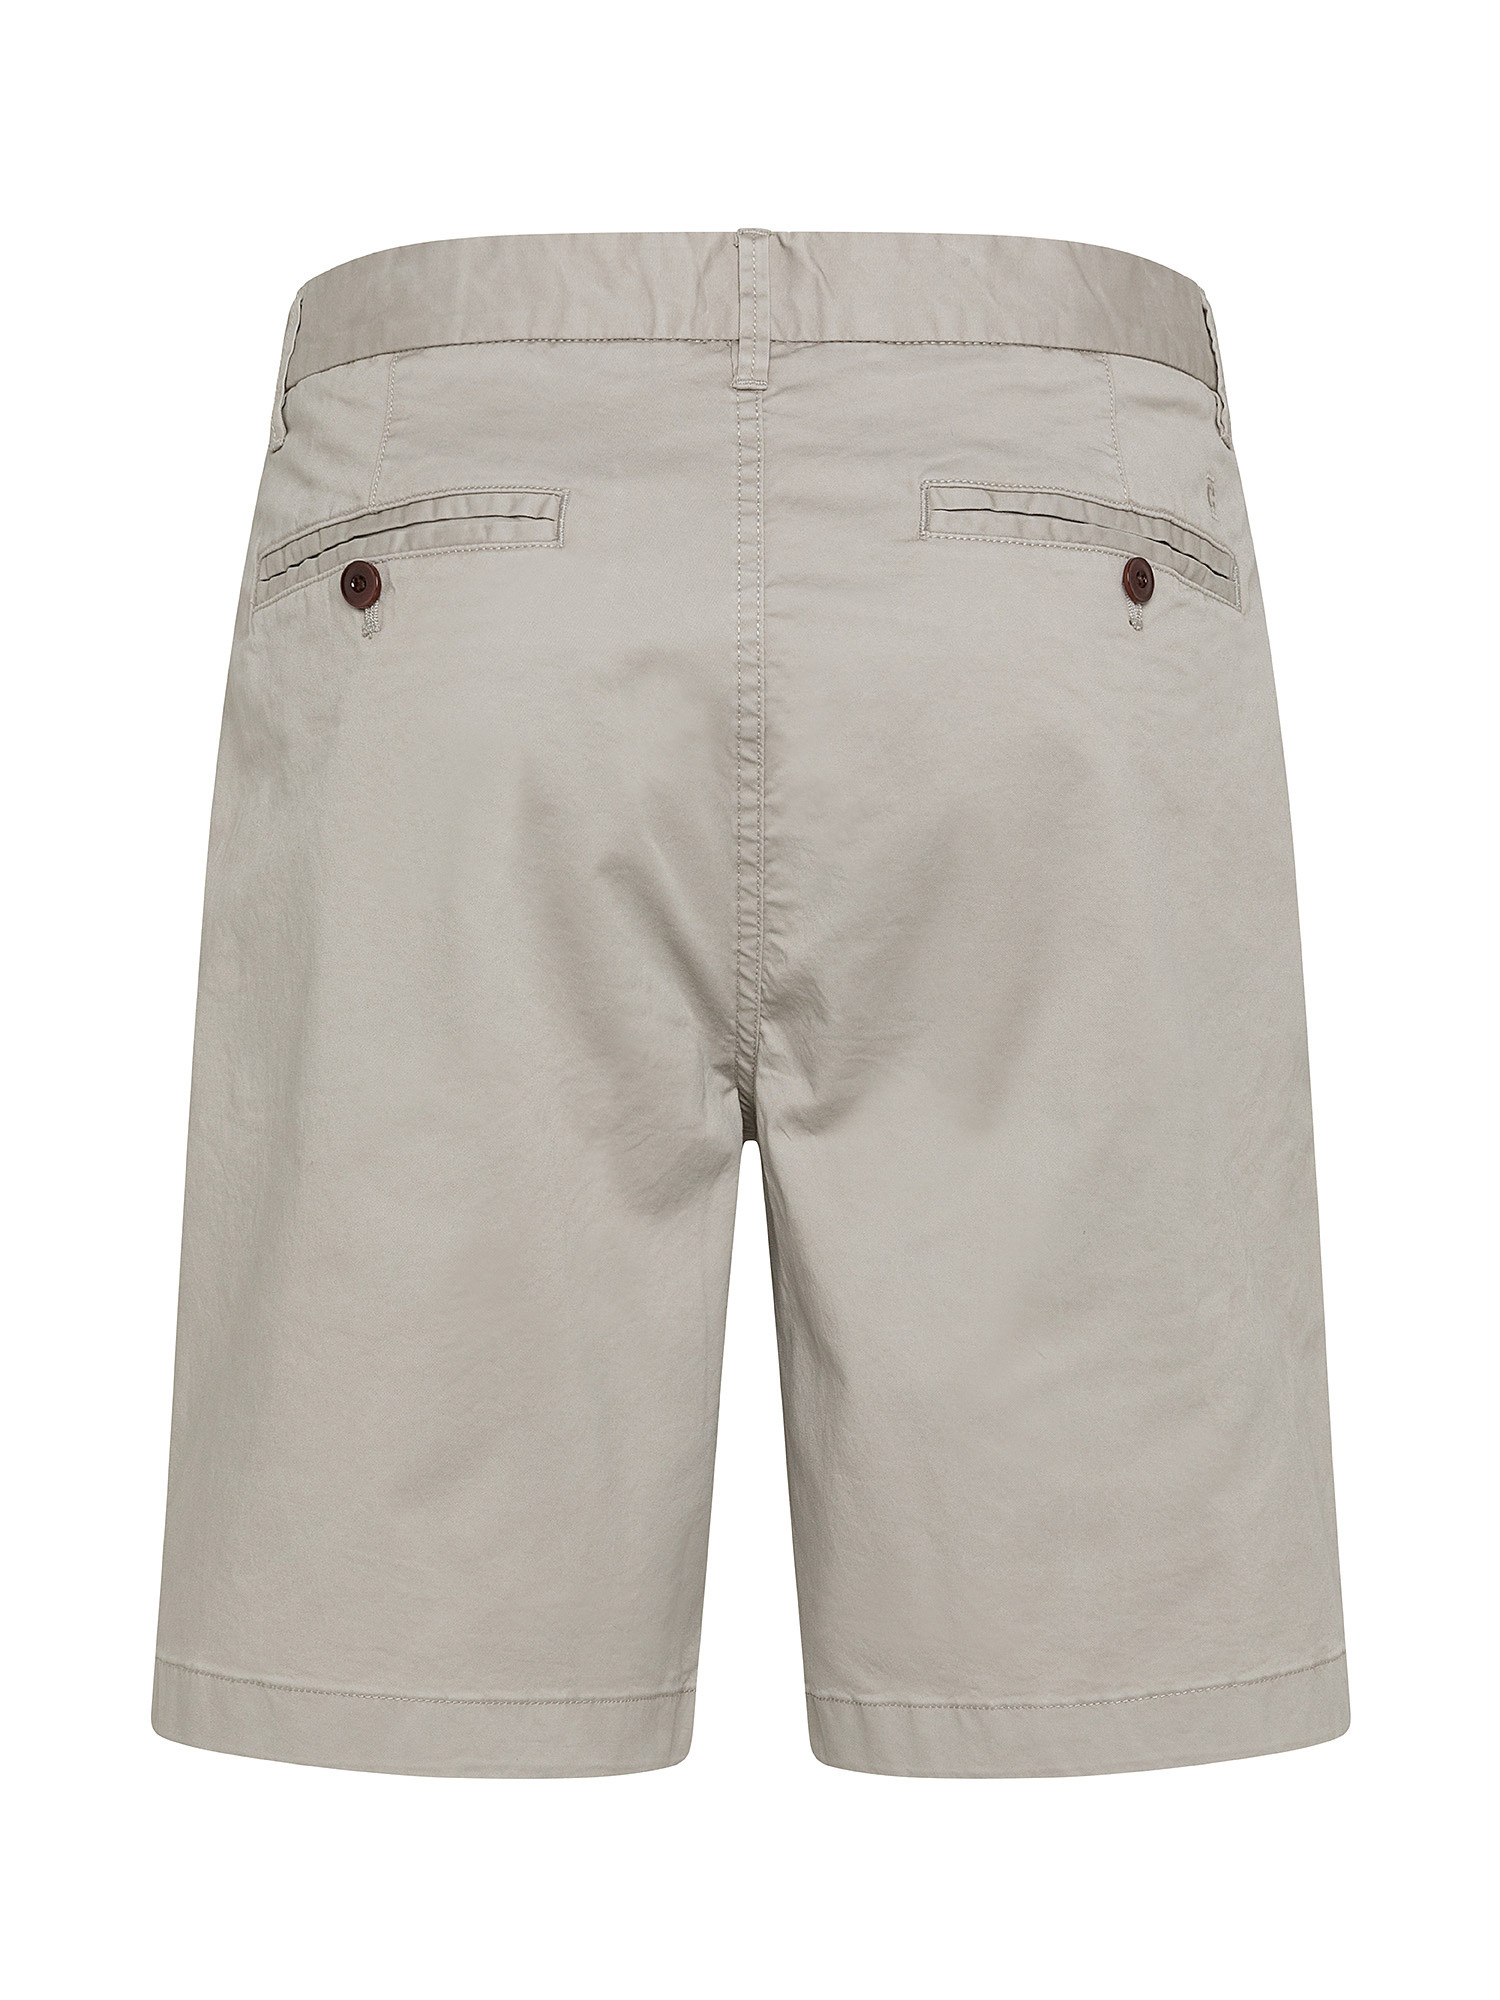 Chino shorts, Light Grey, large image number 1